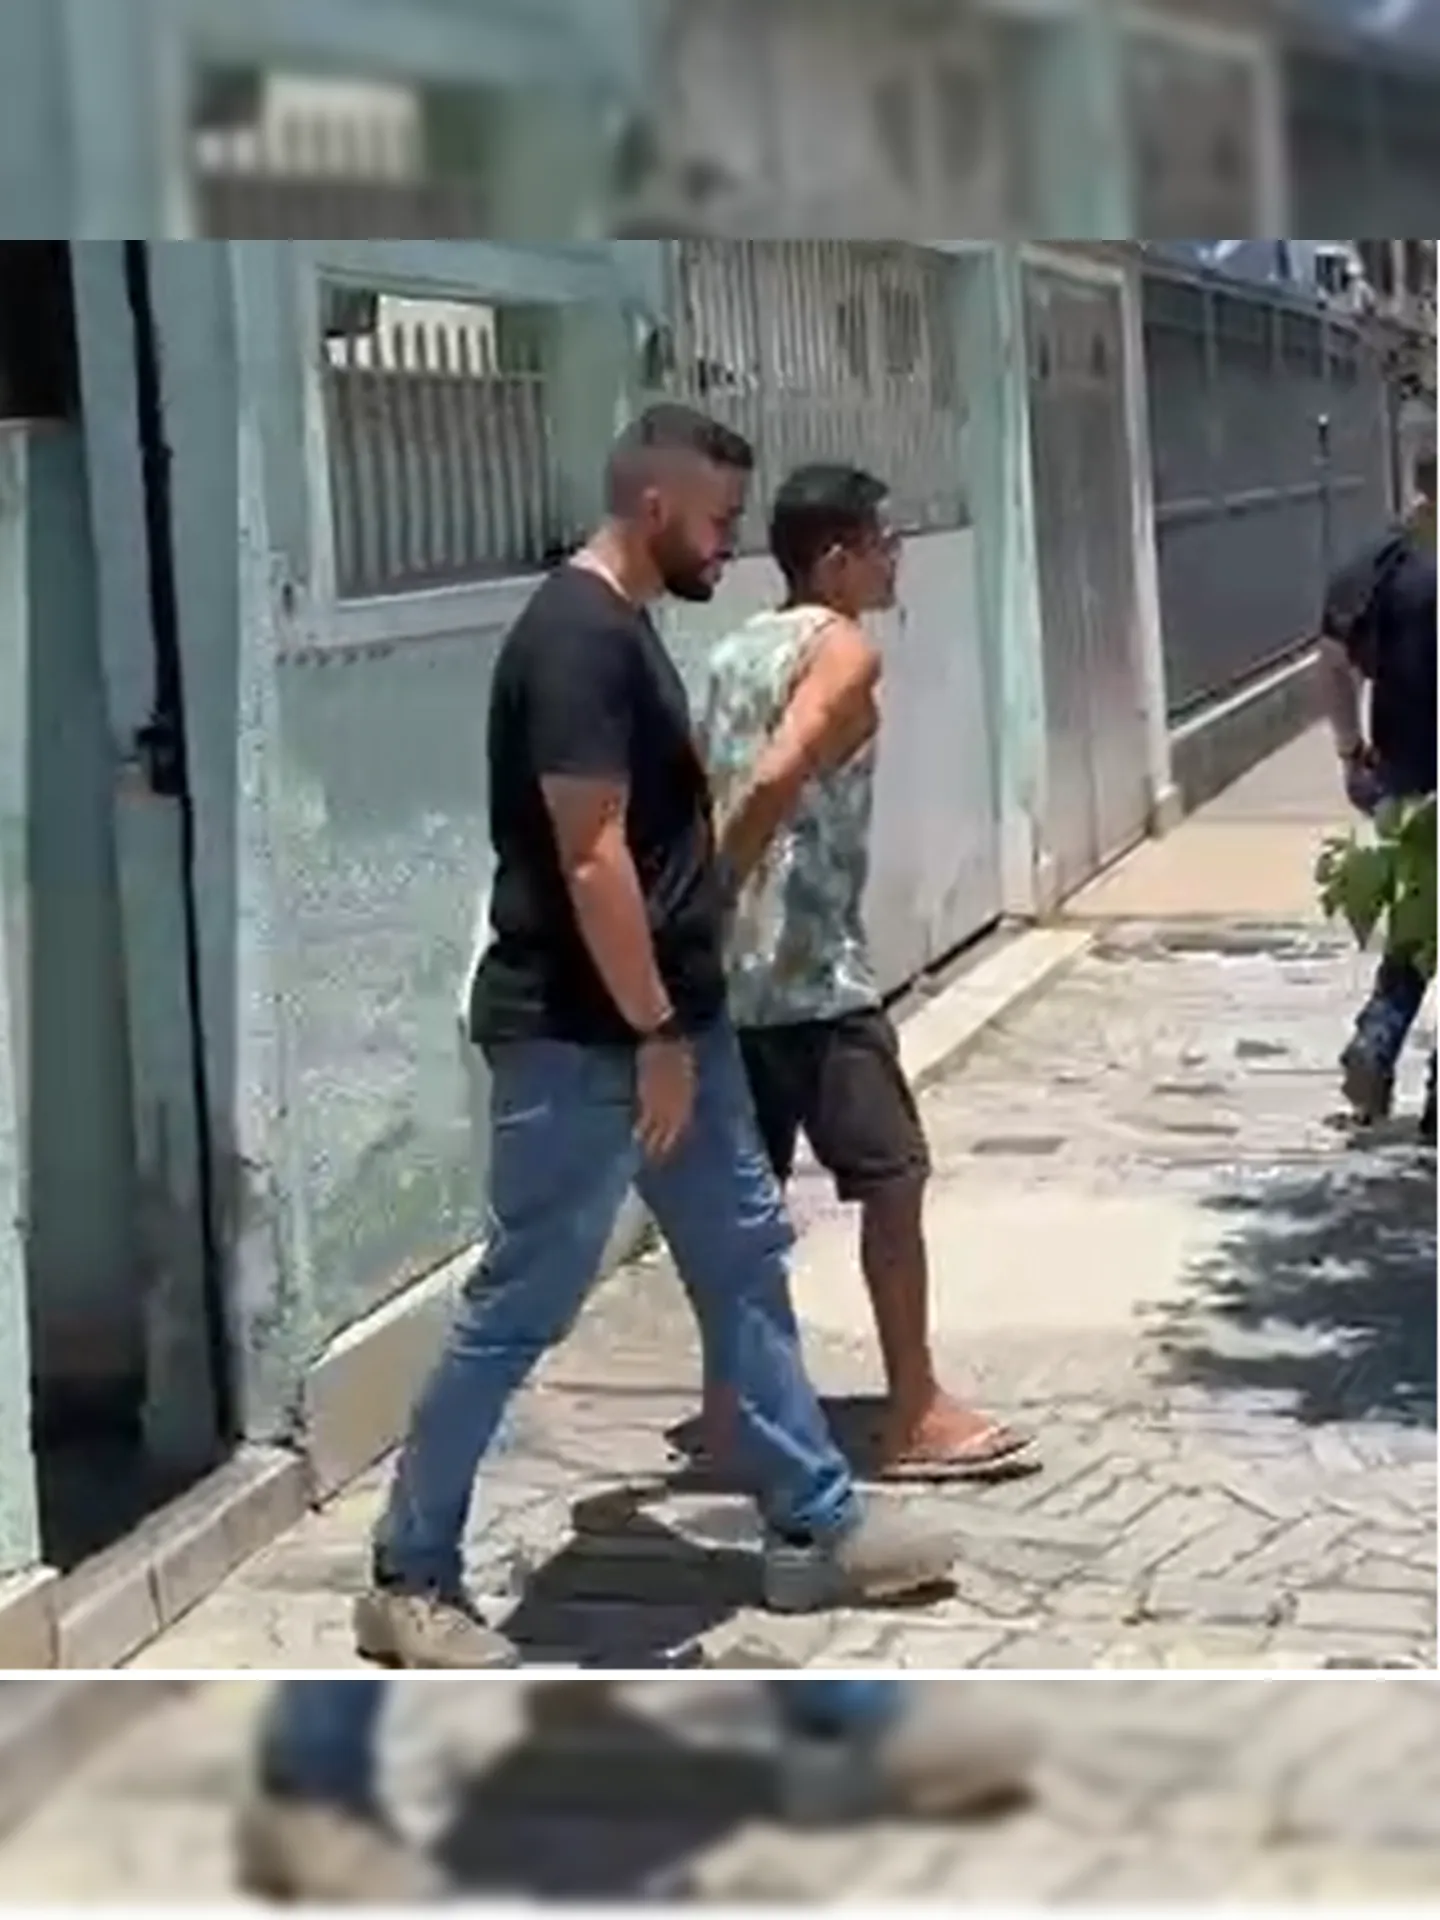 Acusado estava foragido no Rio de Janeiro